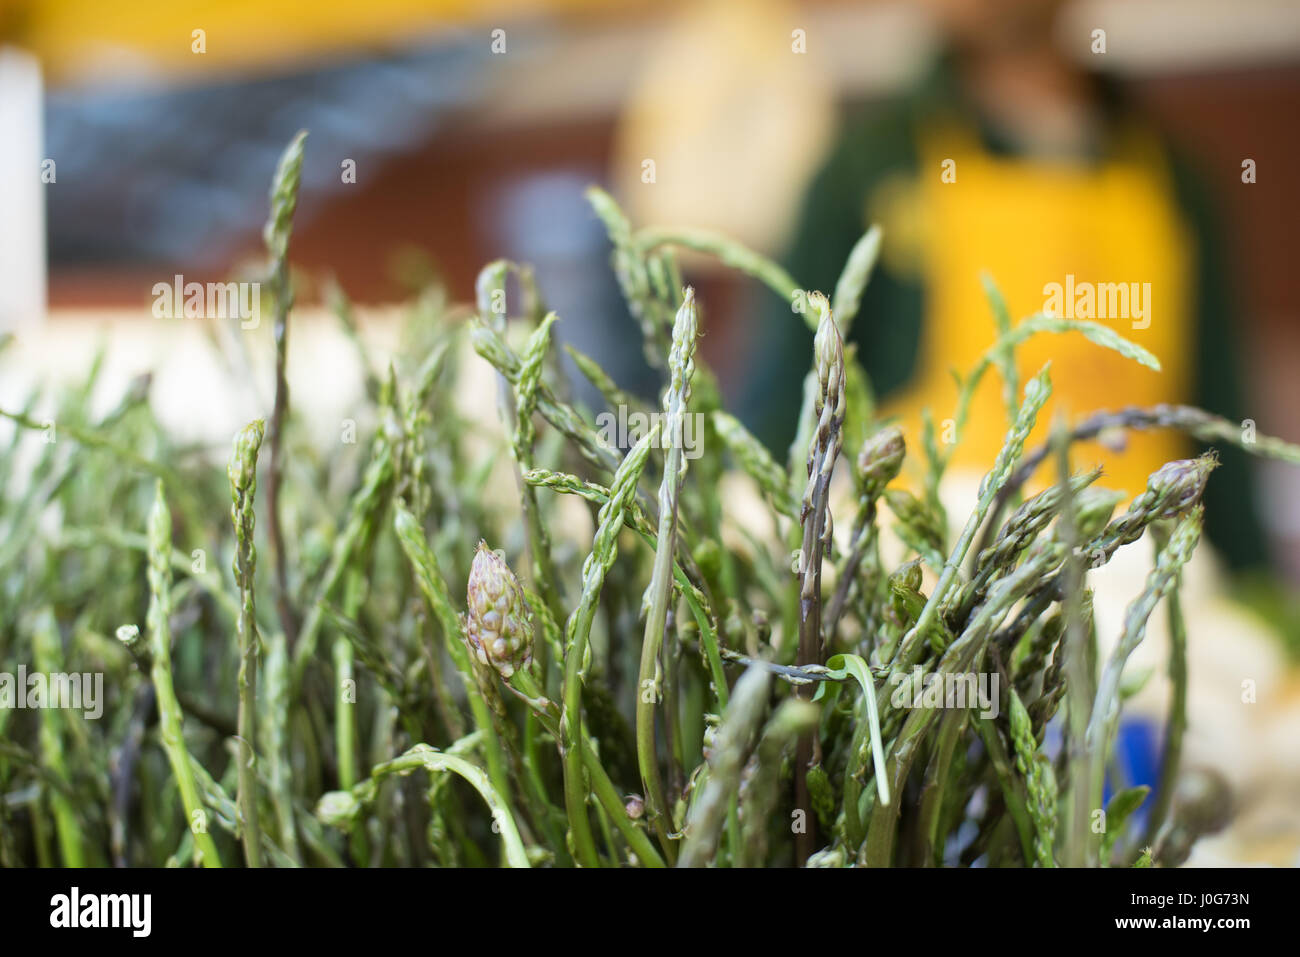 Asparagi verdi selvatici teste a punta mazzetto in stallo del mercato, le persone al di fuori della messa a fuoco in background Foto Stock